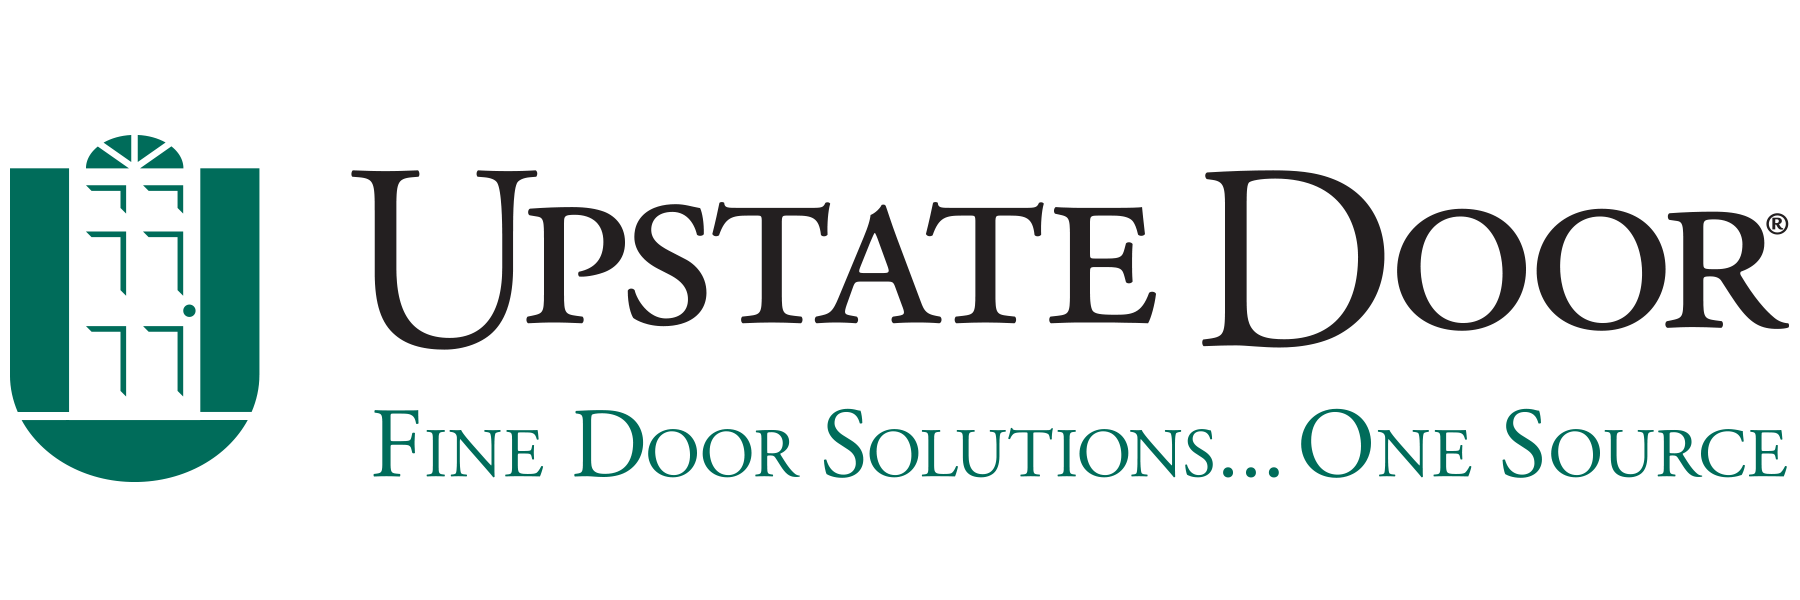 Upstate Door logo